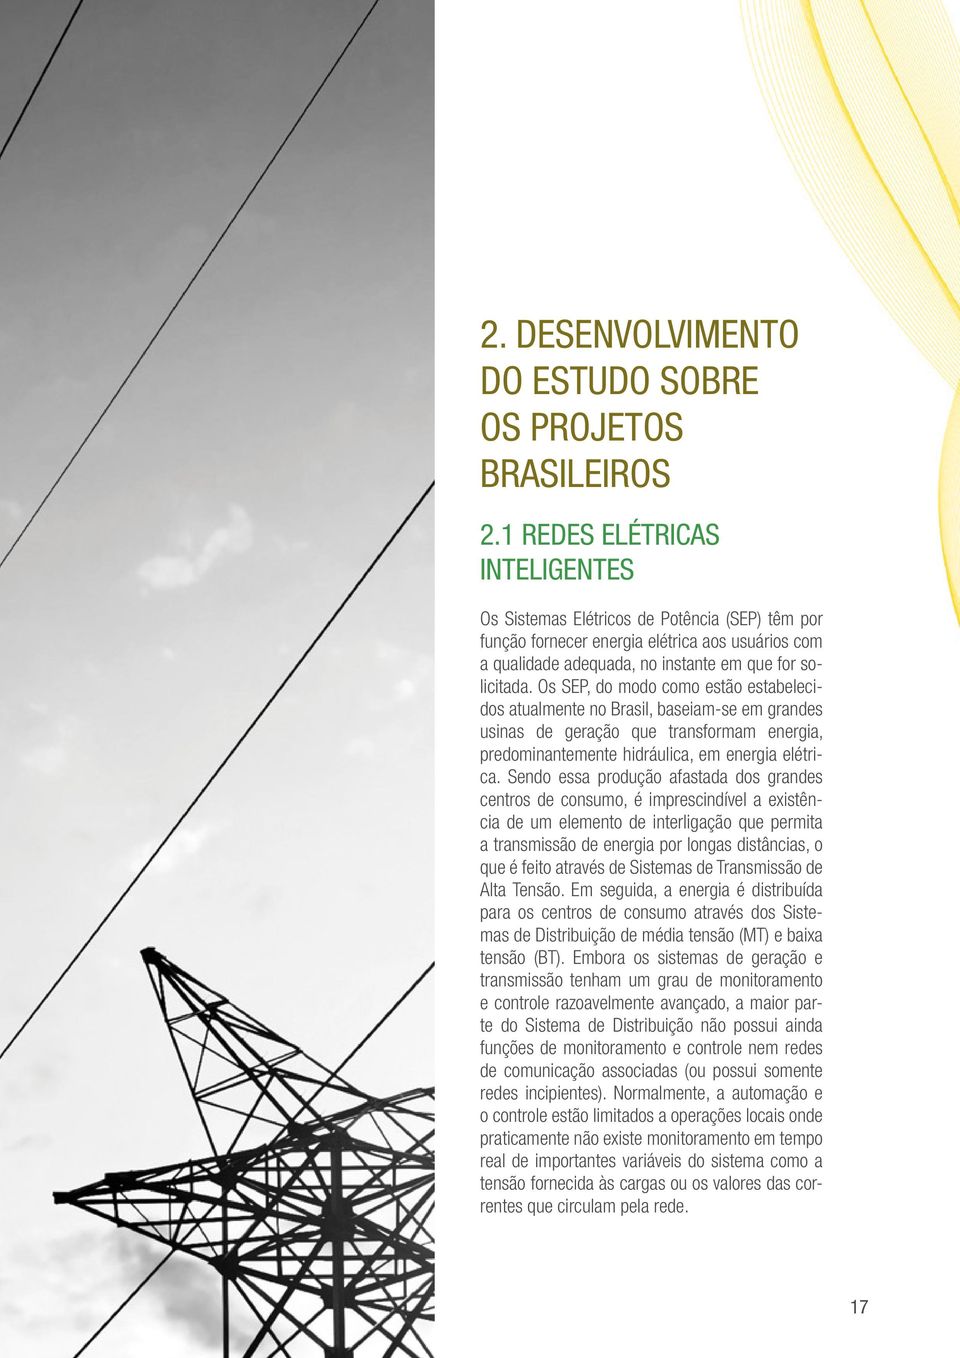 Os SEP, do modo como estão estabelecidos atualmente no Brasil, baseiam-se em grandes usinas de geração que transformam energia, predominantemente hidráulica, em energia elétrica.